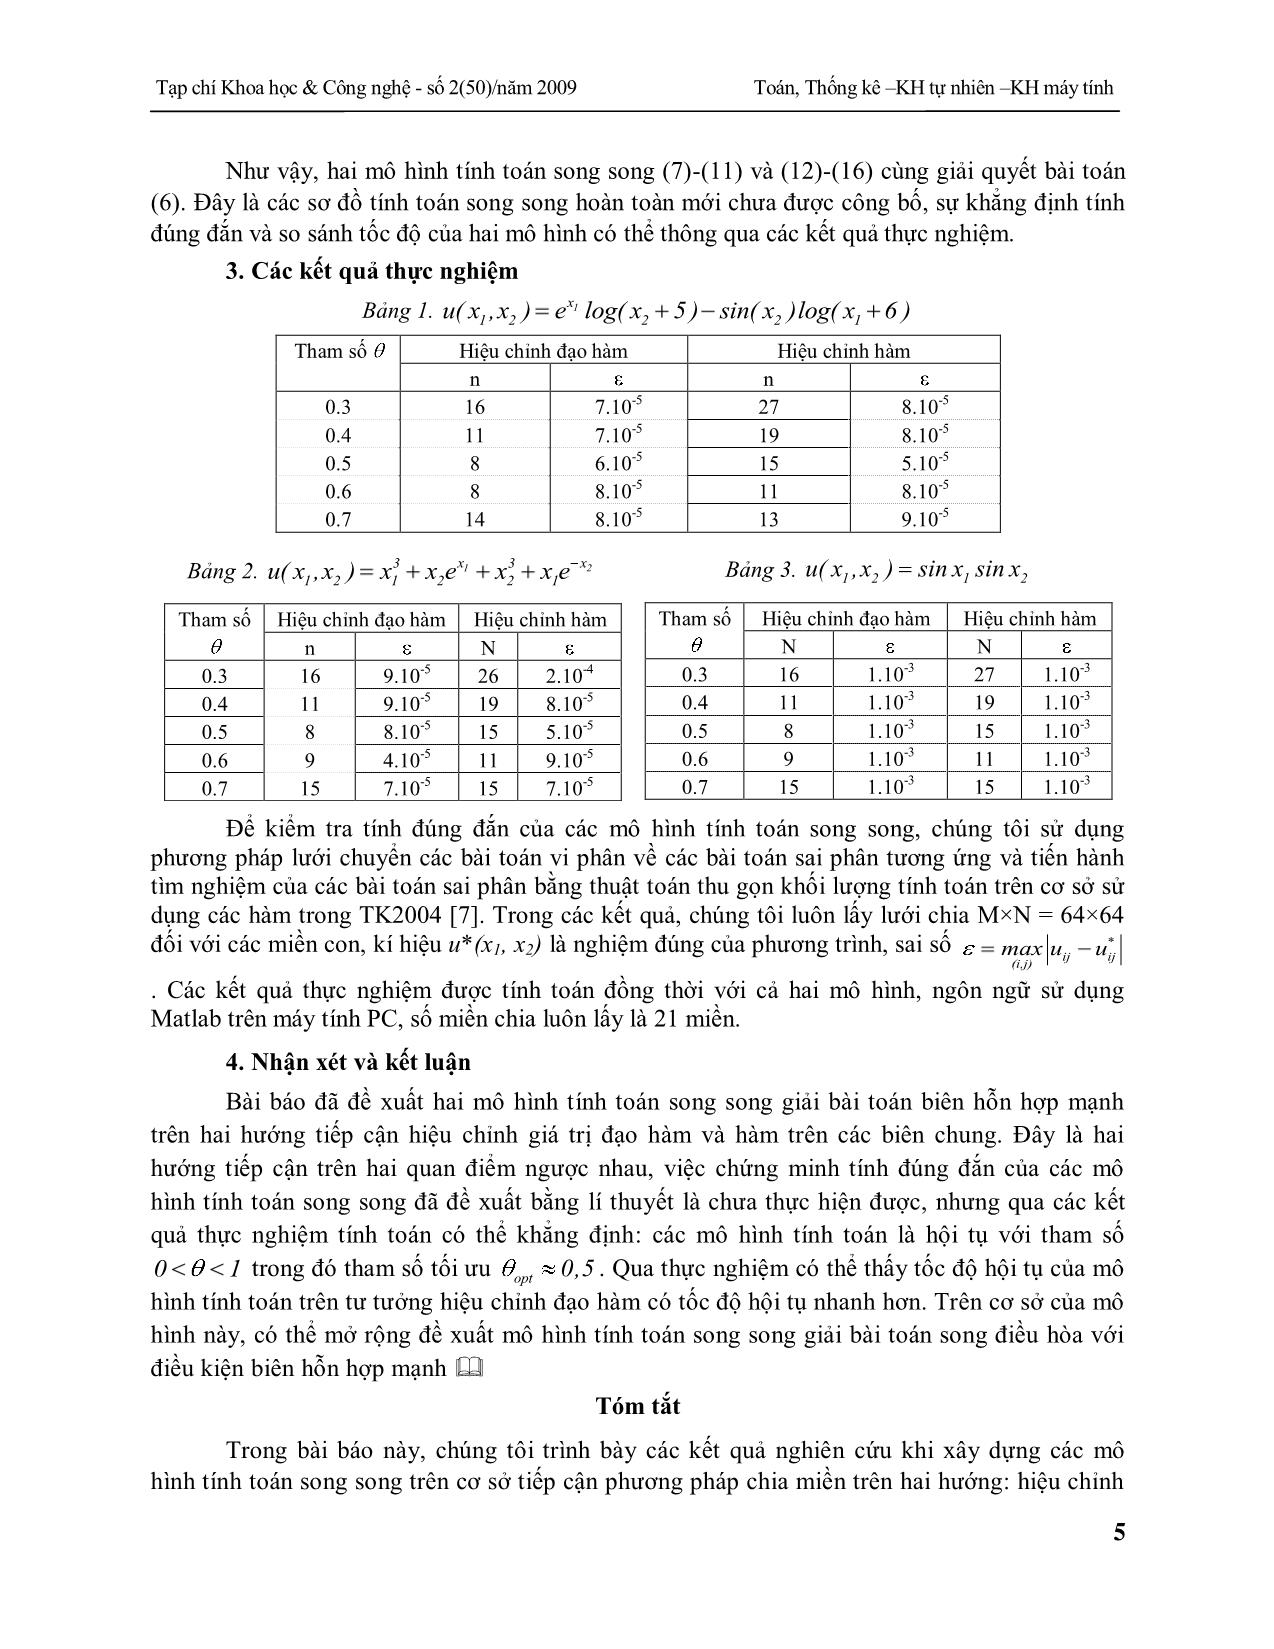 Mô hình tính toán song song giải bài toán biên hỗn hợp mạnh dựa trên chia miền trang 5